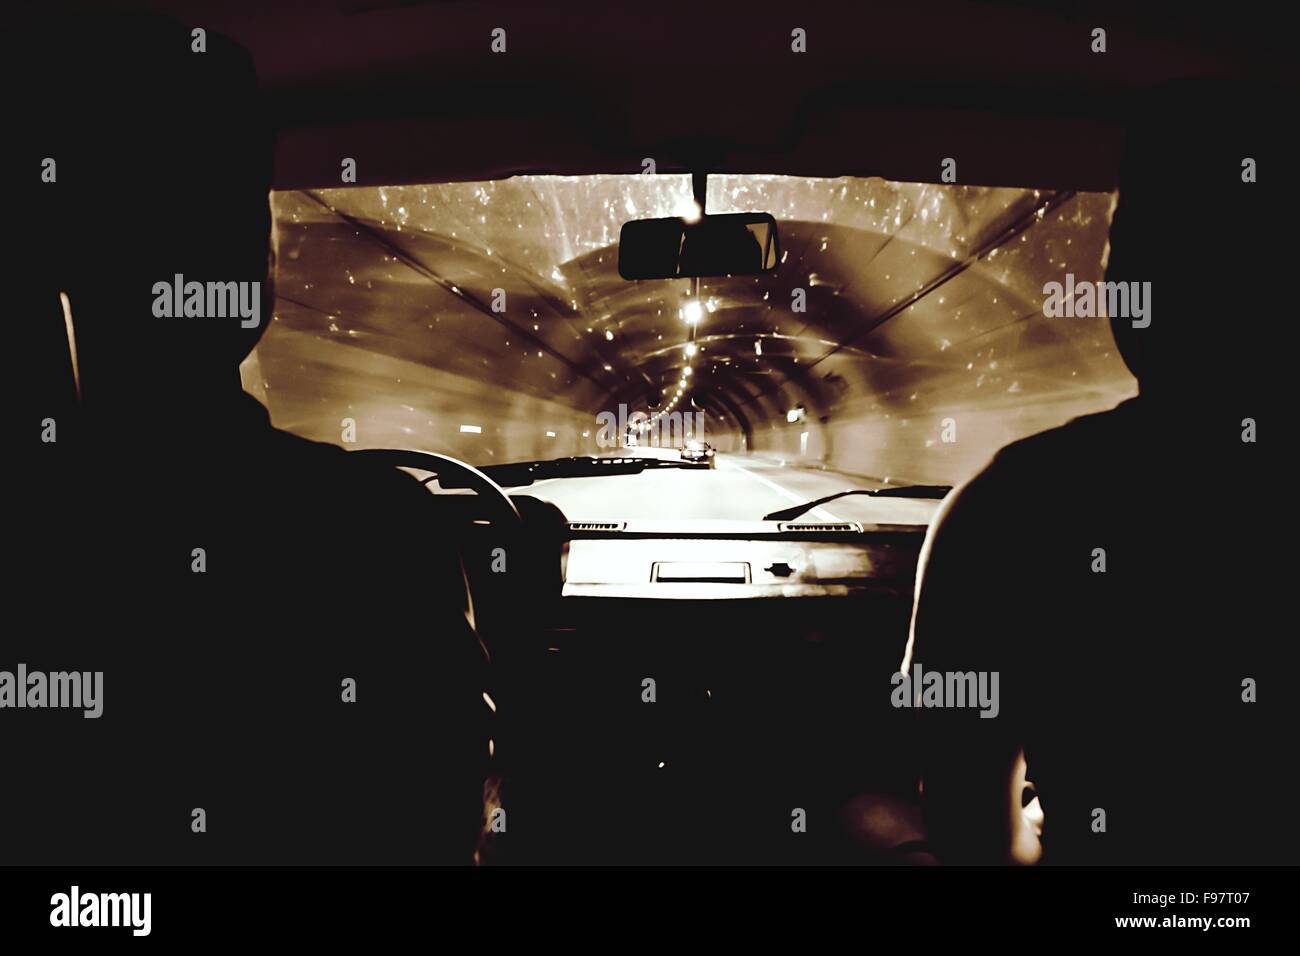 Silhouette Menschen fahren Auto In beleuchteten Tunnel Stockfoto